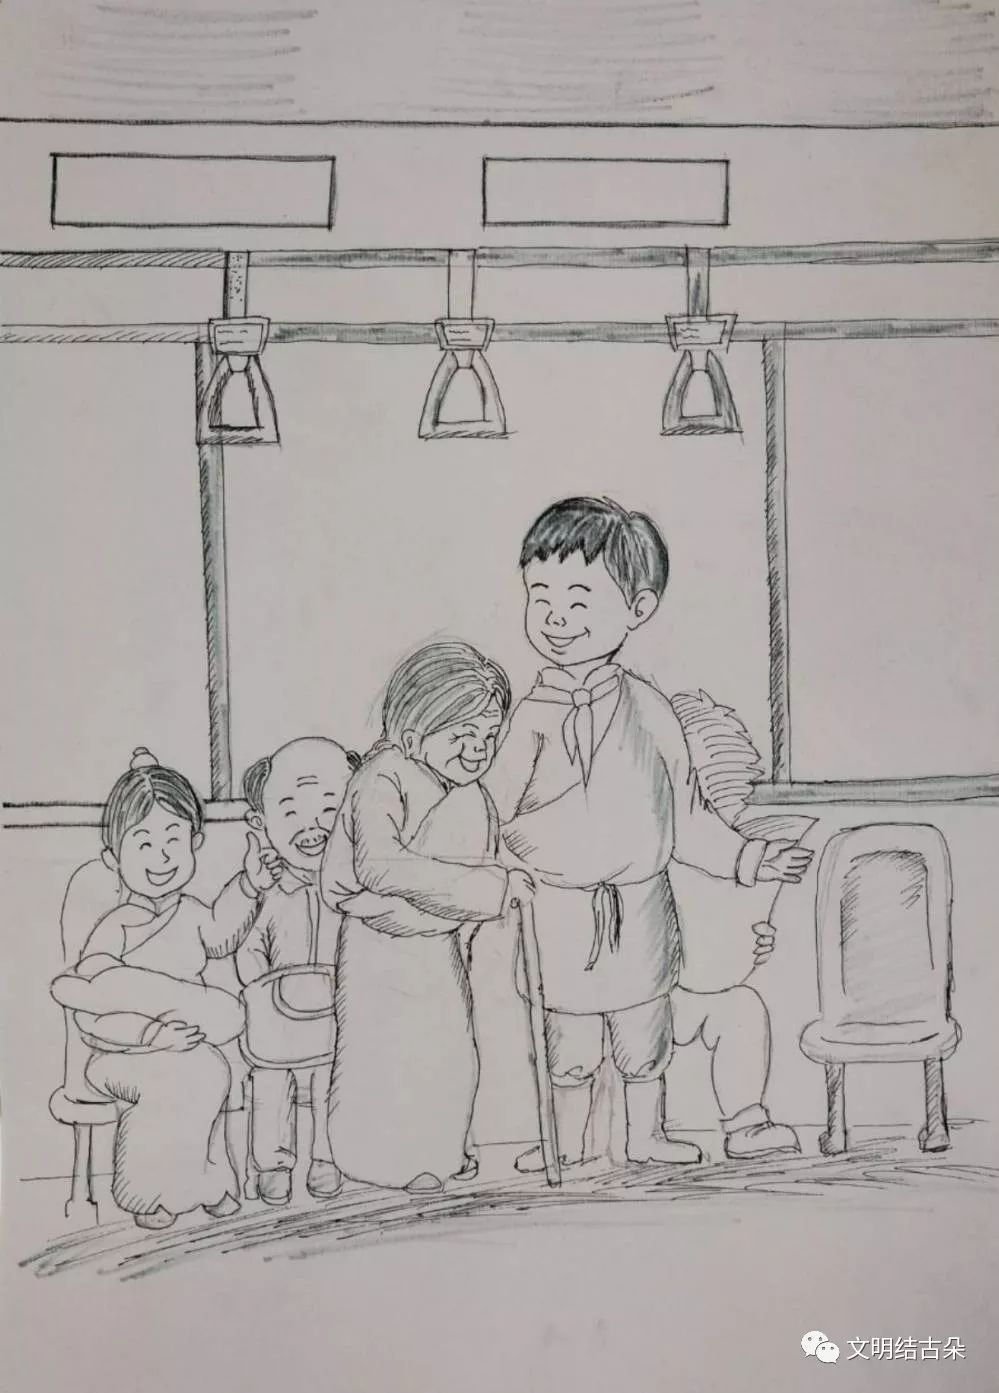 "文明"作者:布才/玉树市第三完全小学六年级2班此次活动共征集绘画